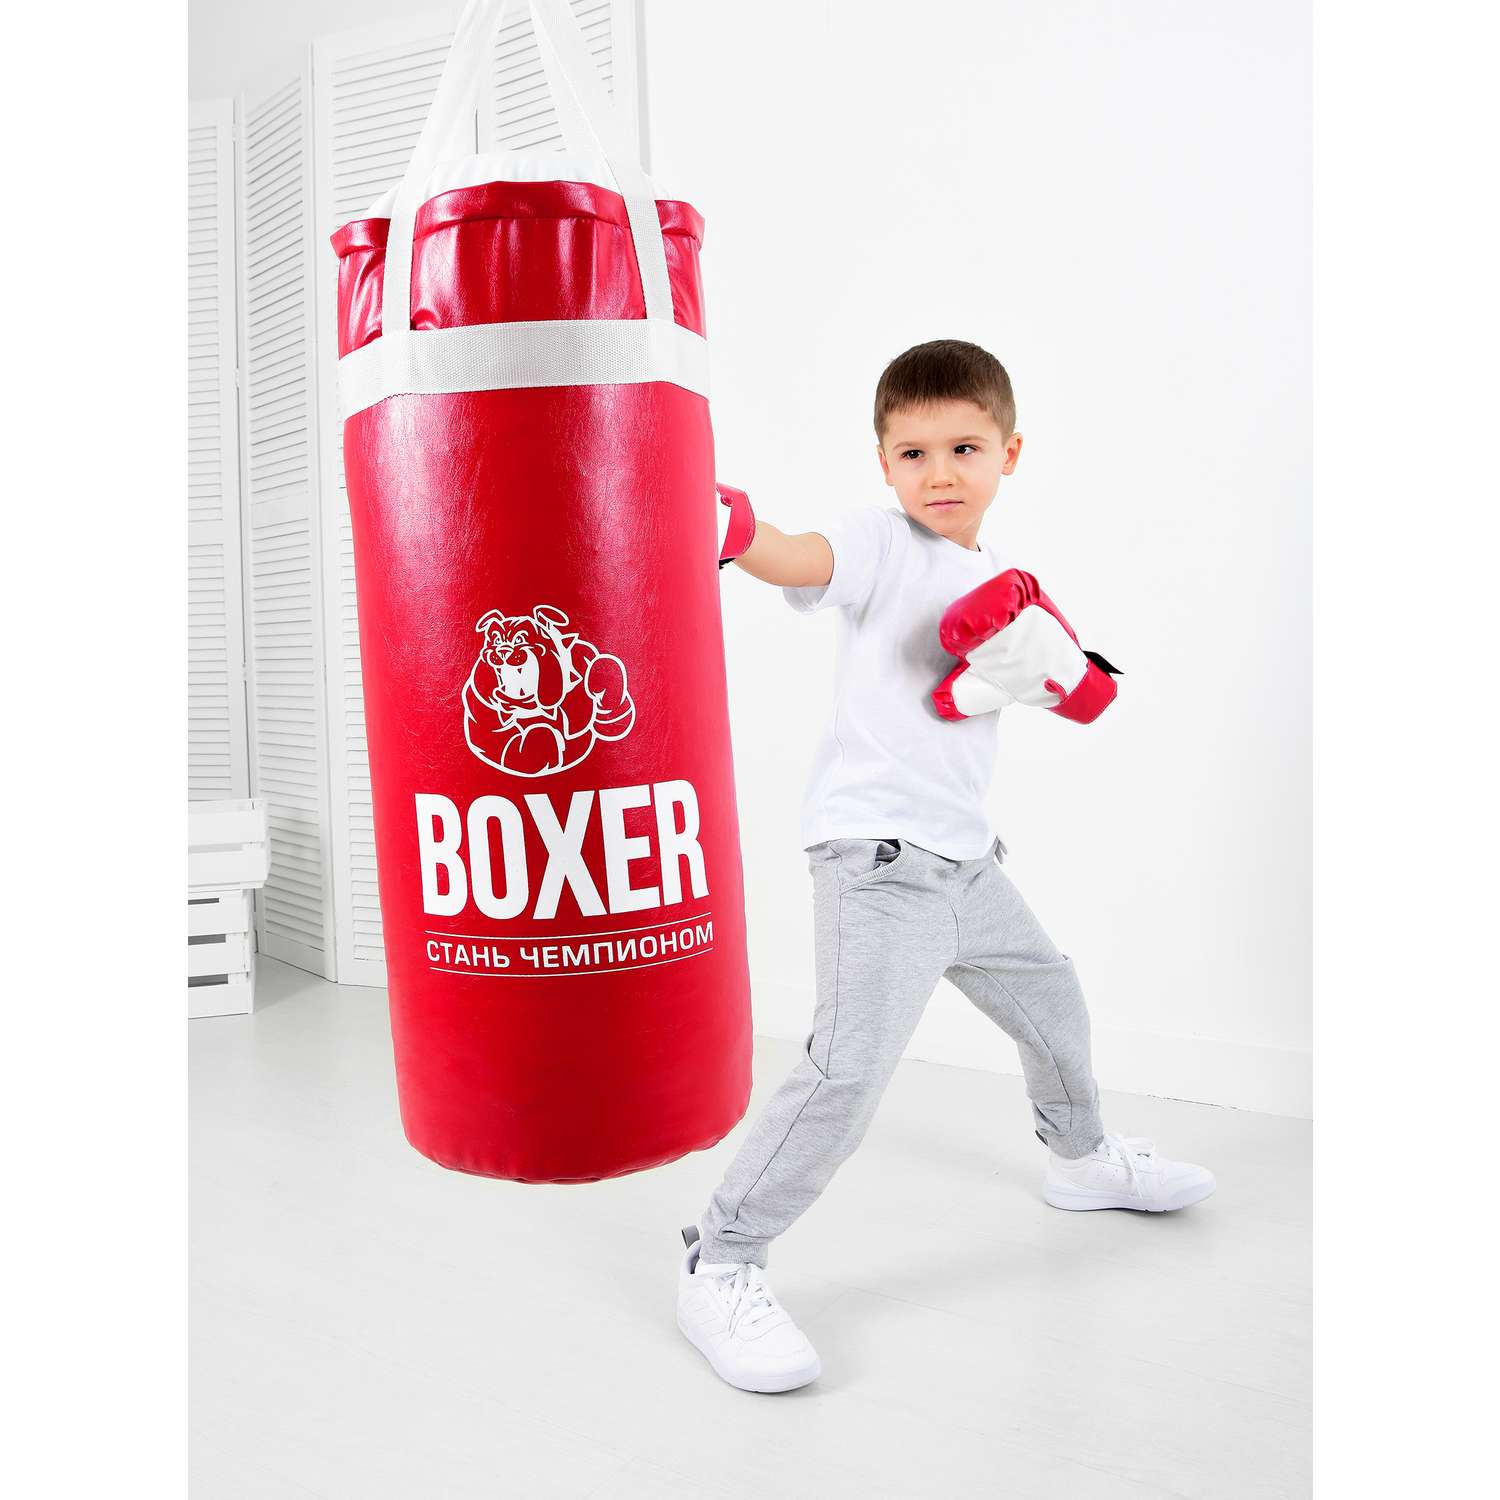 Детская боксерская экипировка - груши, перчатки, шлем и форма